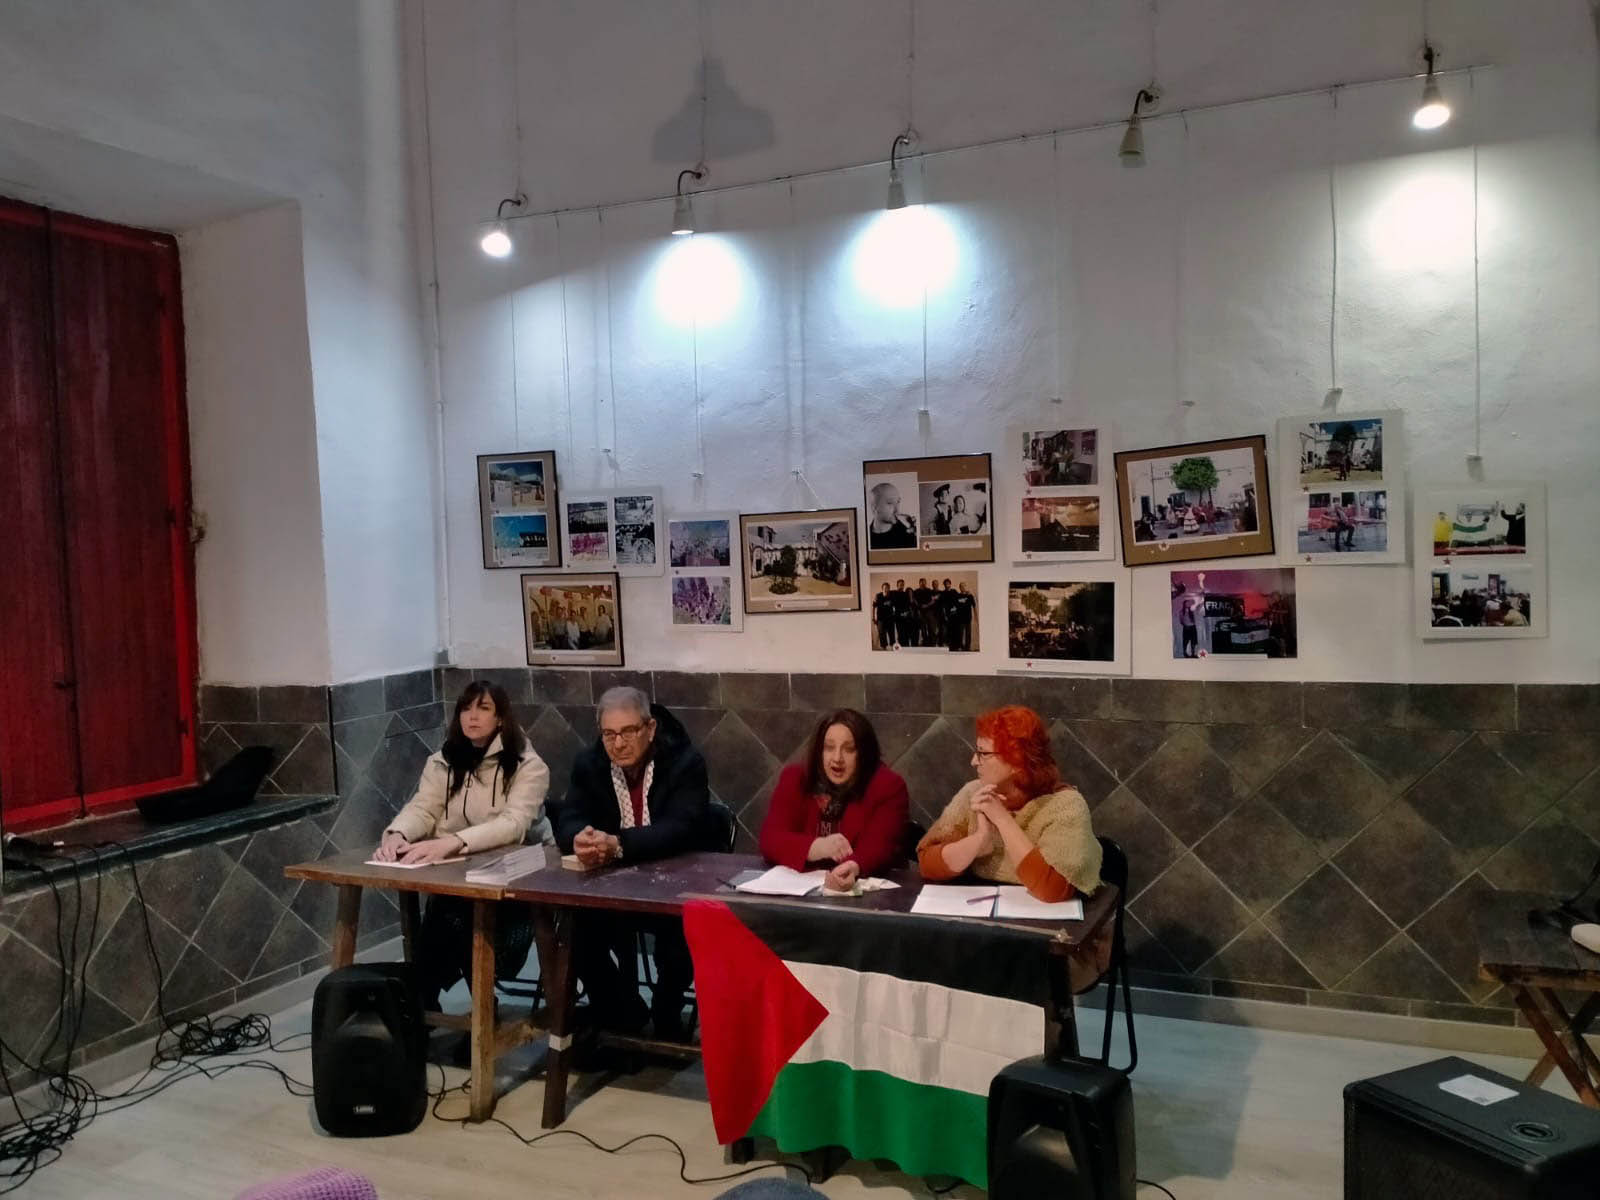 Acto Público en Córdoba: Análisis del Antiimperialismo y Solidaridad con Palestina